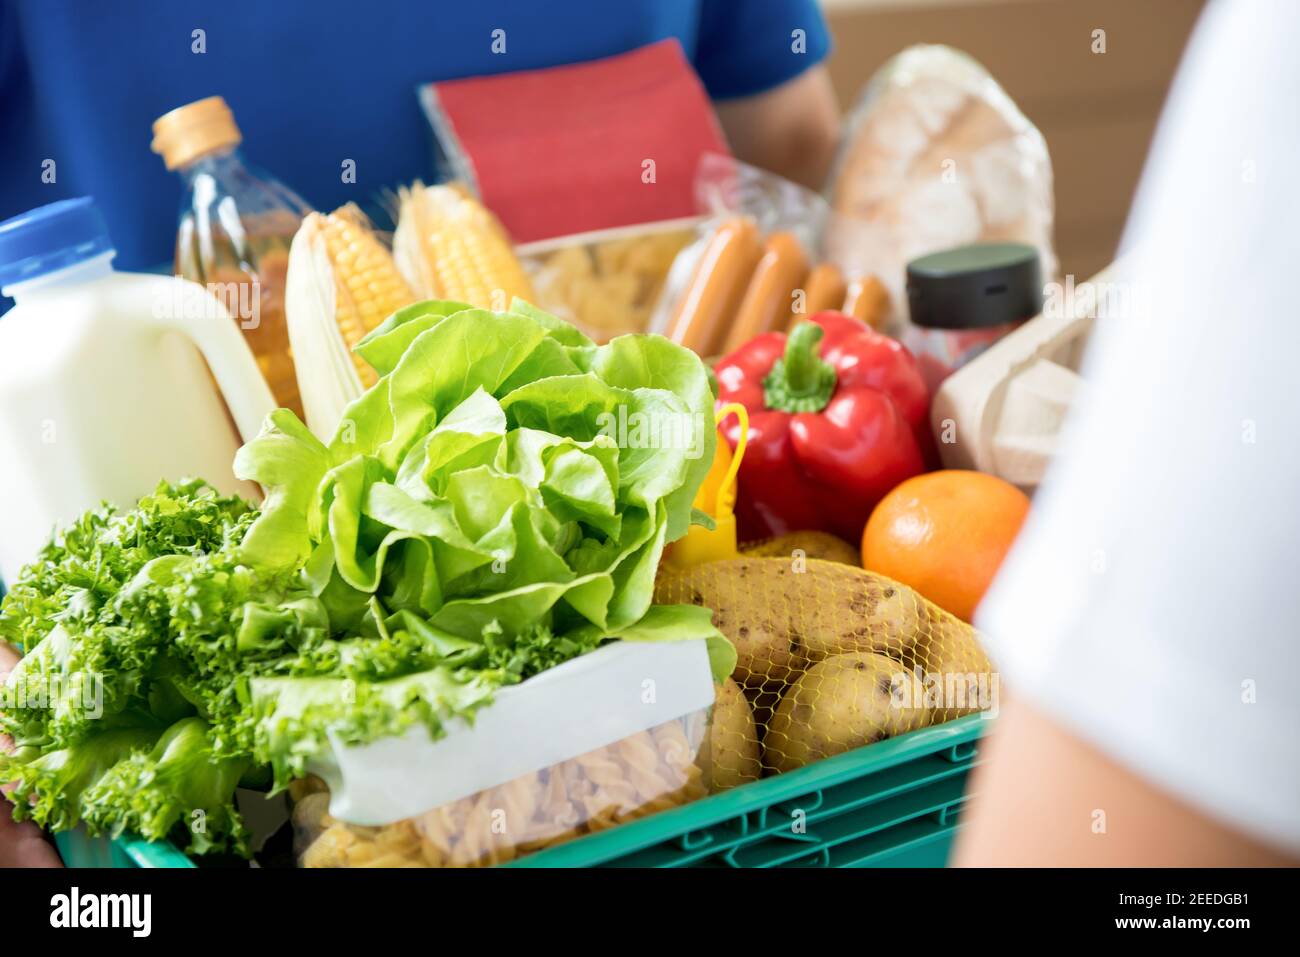 Delivery man liefert Lebensmittel an den Kunden zu Hause - online Lebensmitteleinkaufservice-Konzept Stockfoto